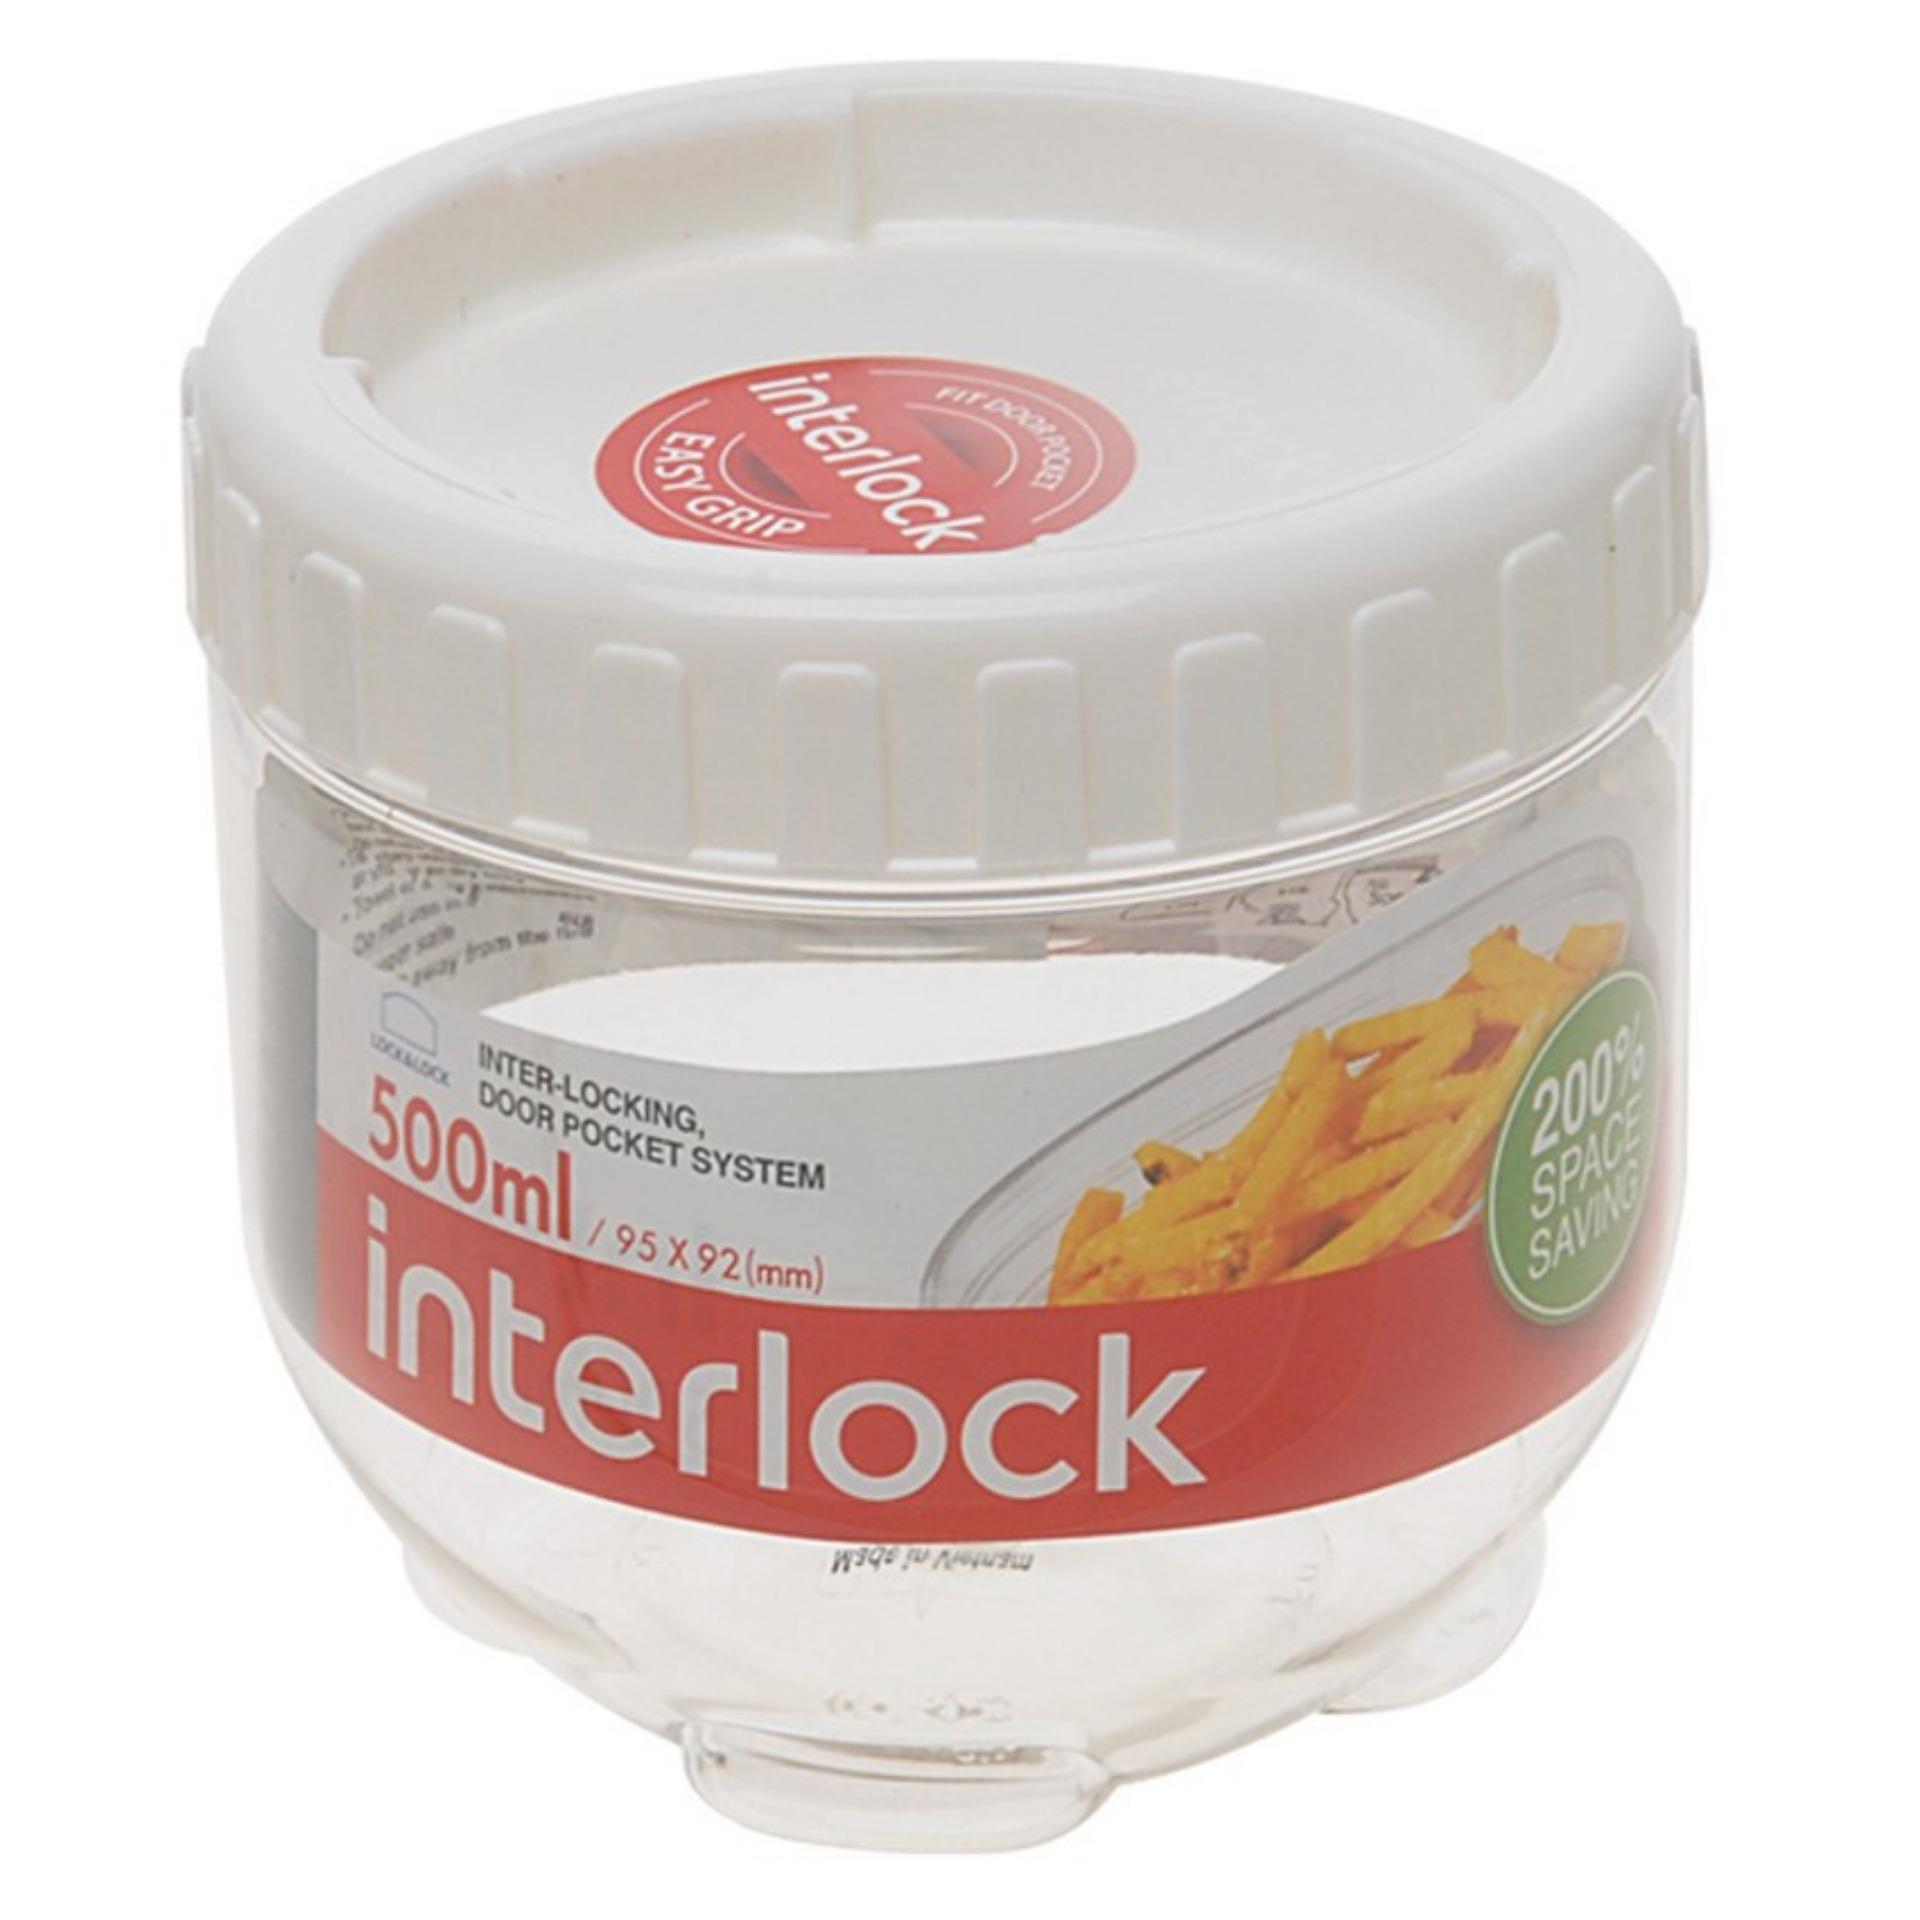 Bộ 2 hộp thực phẩm và 1 bình nước Lock&lock Interlock